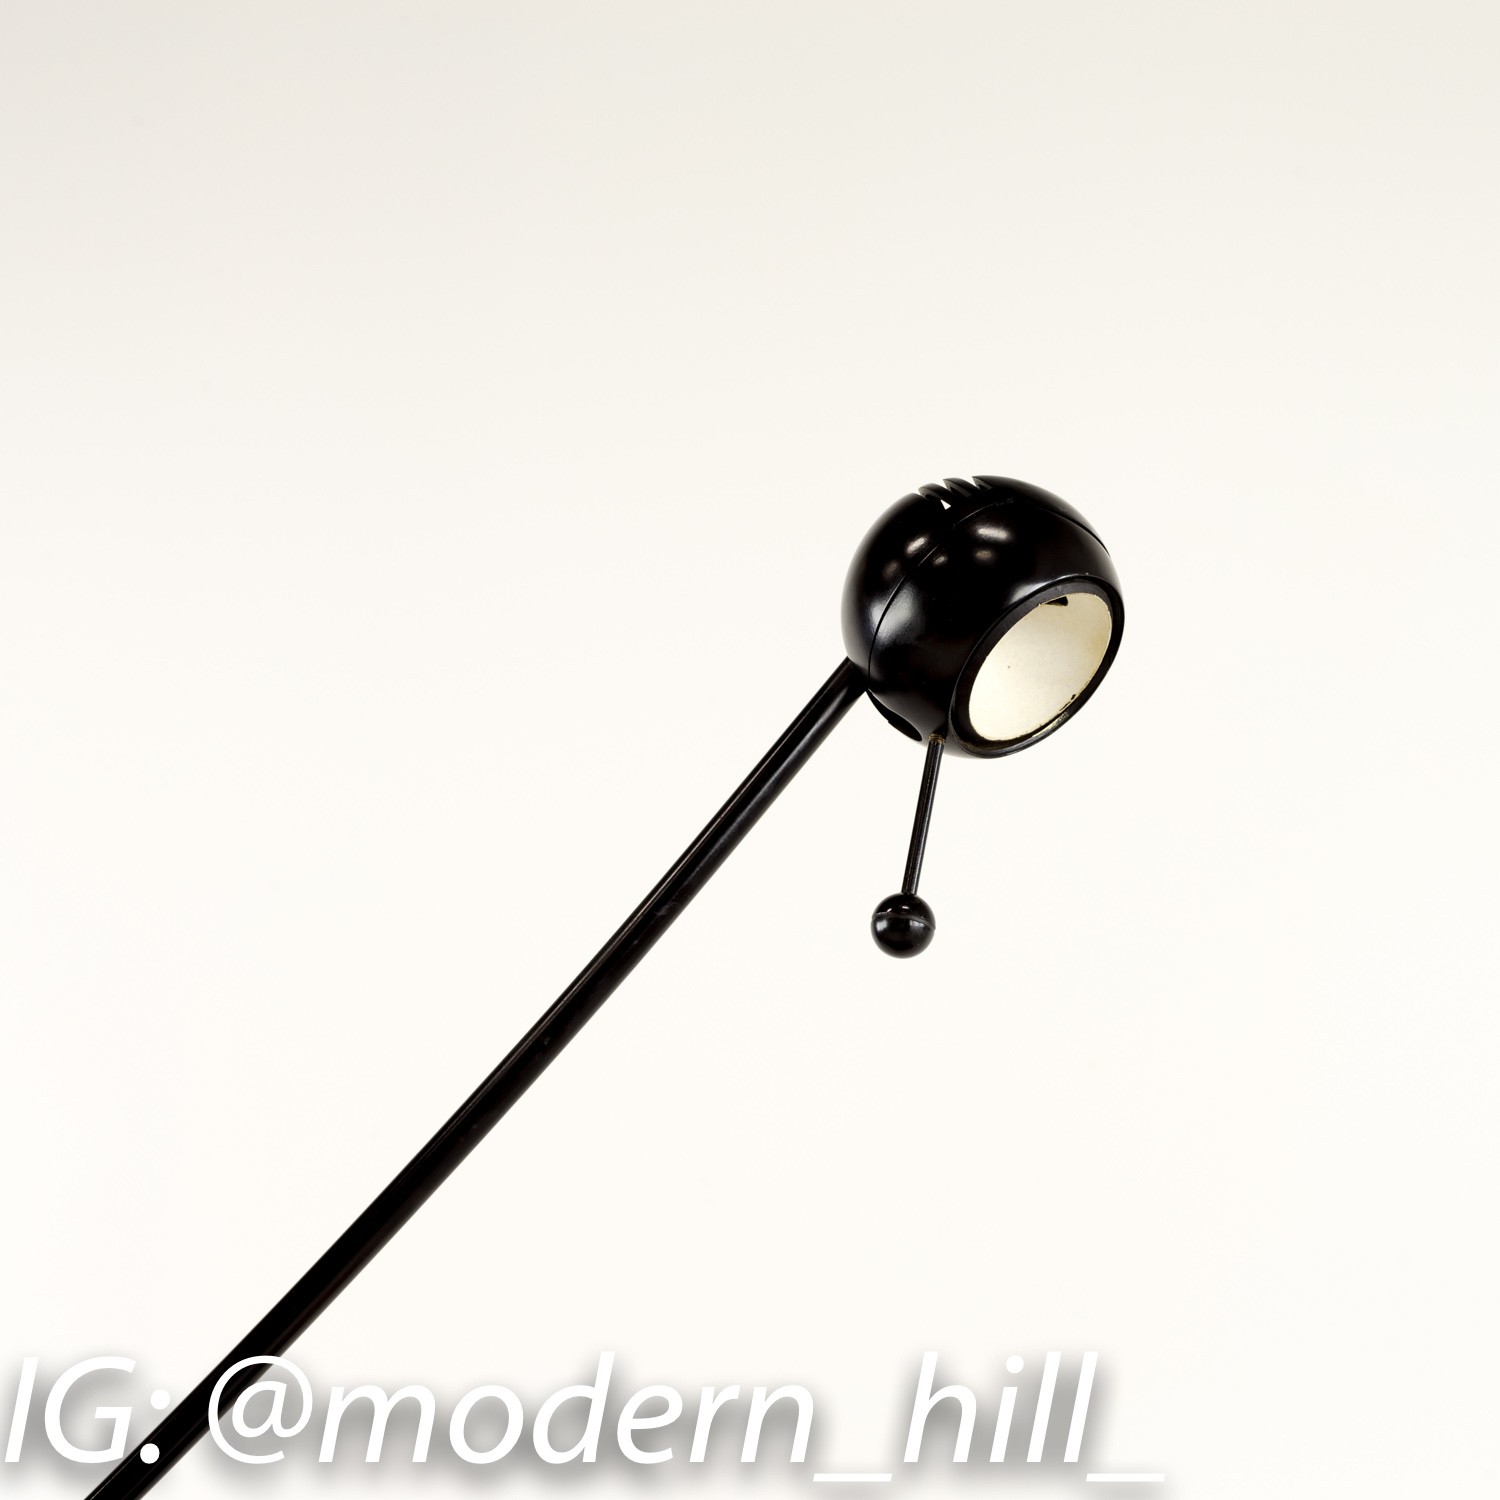 Calder Desk Lamp by Enric Franch Miret for Metalarte Spain